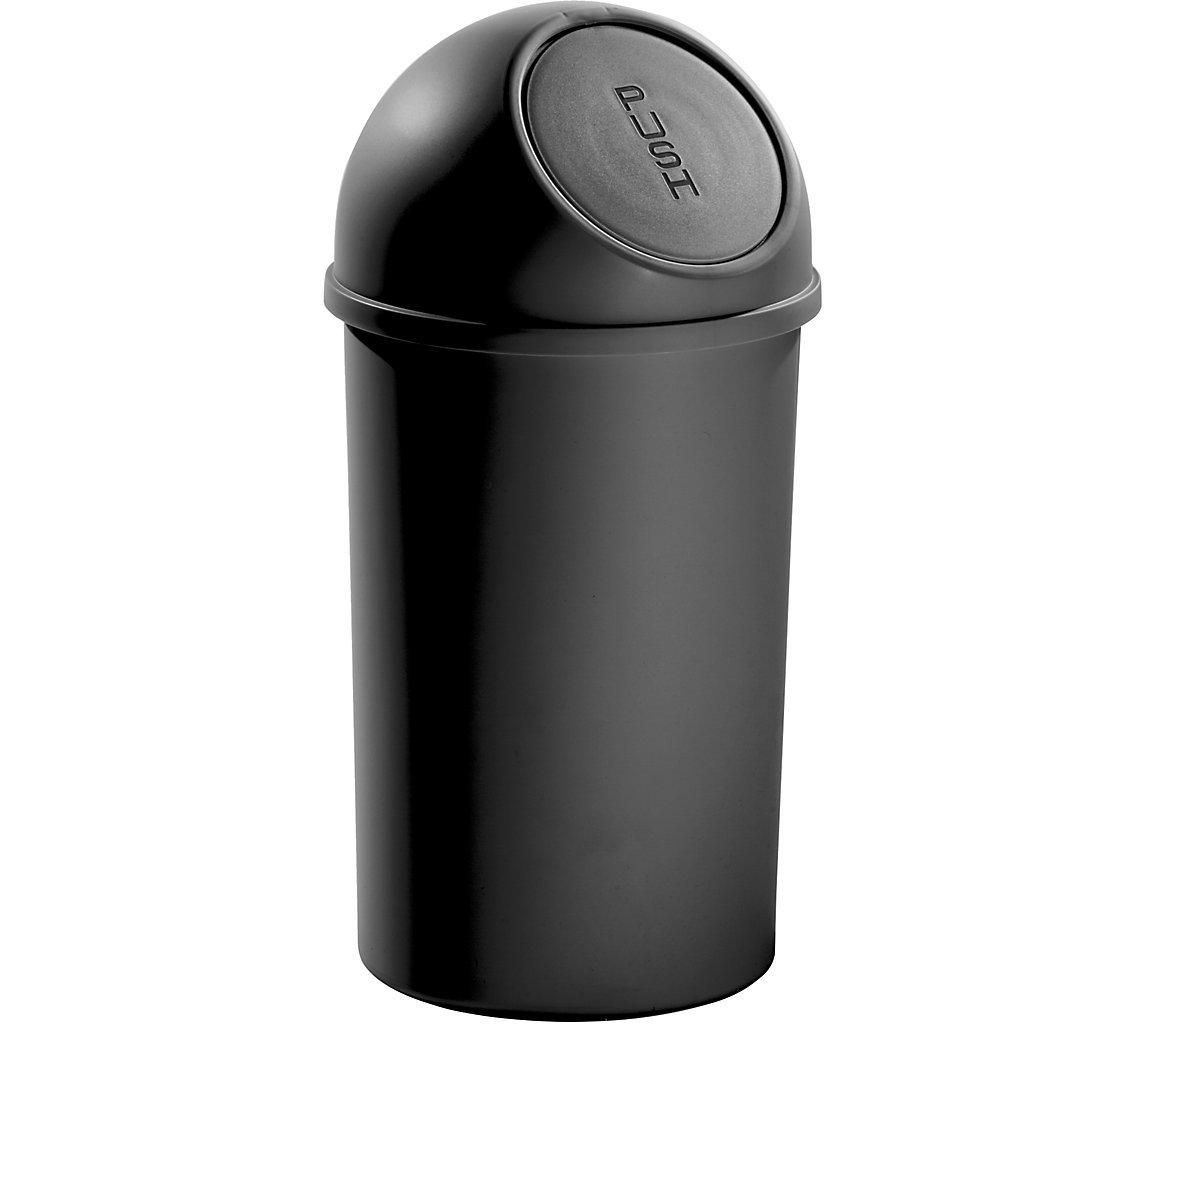 helit – Samozavírací nádoba na odpadky z plastu, objem 25 l, v x Ø 615 x 315 mm, černá, bal.j. 3 ks